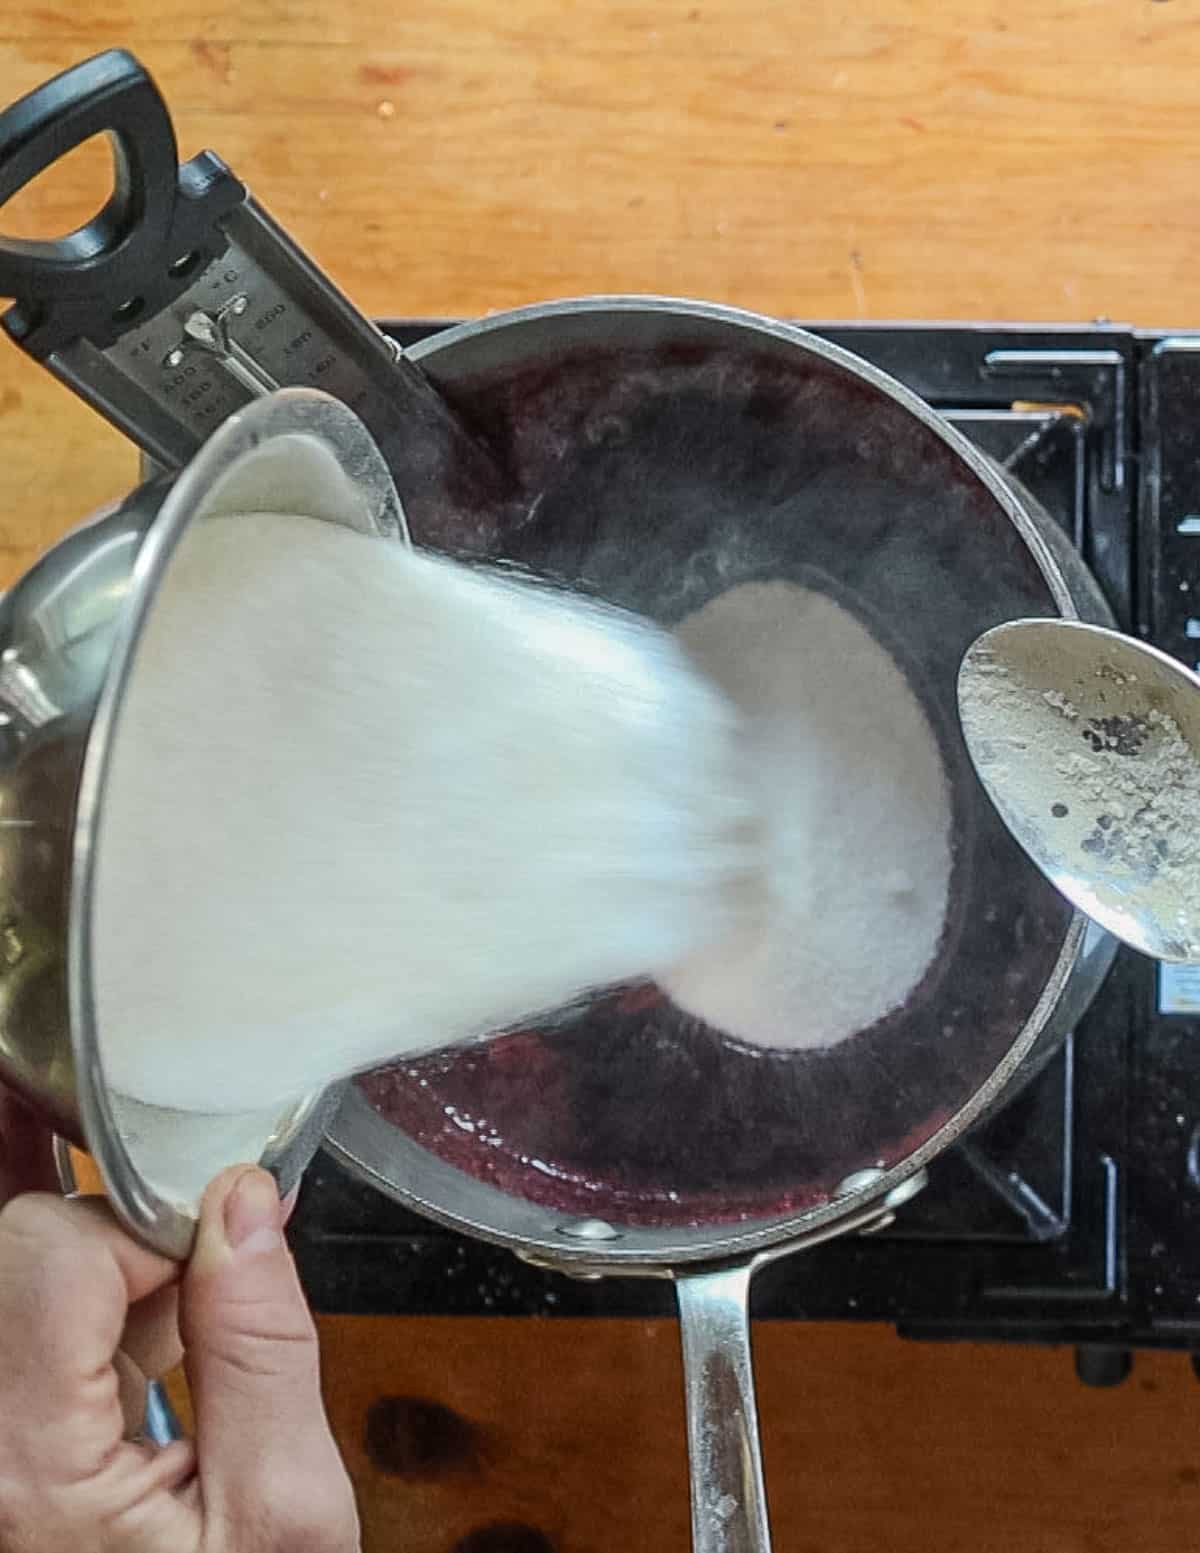 Adding sugar to aronia juice. 